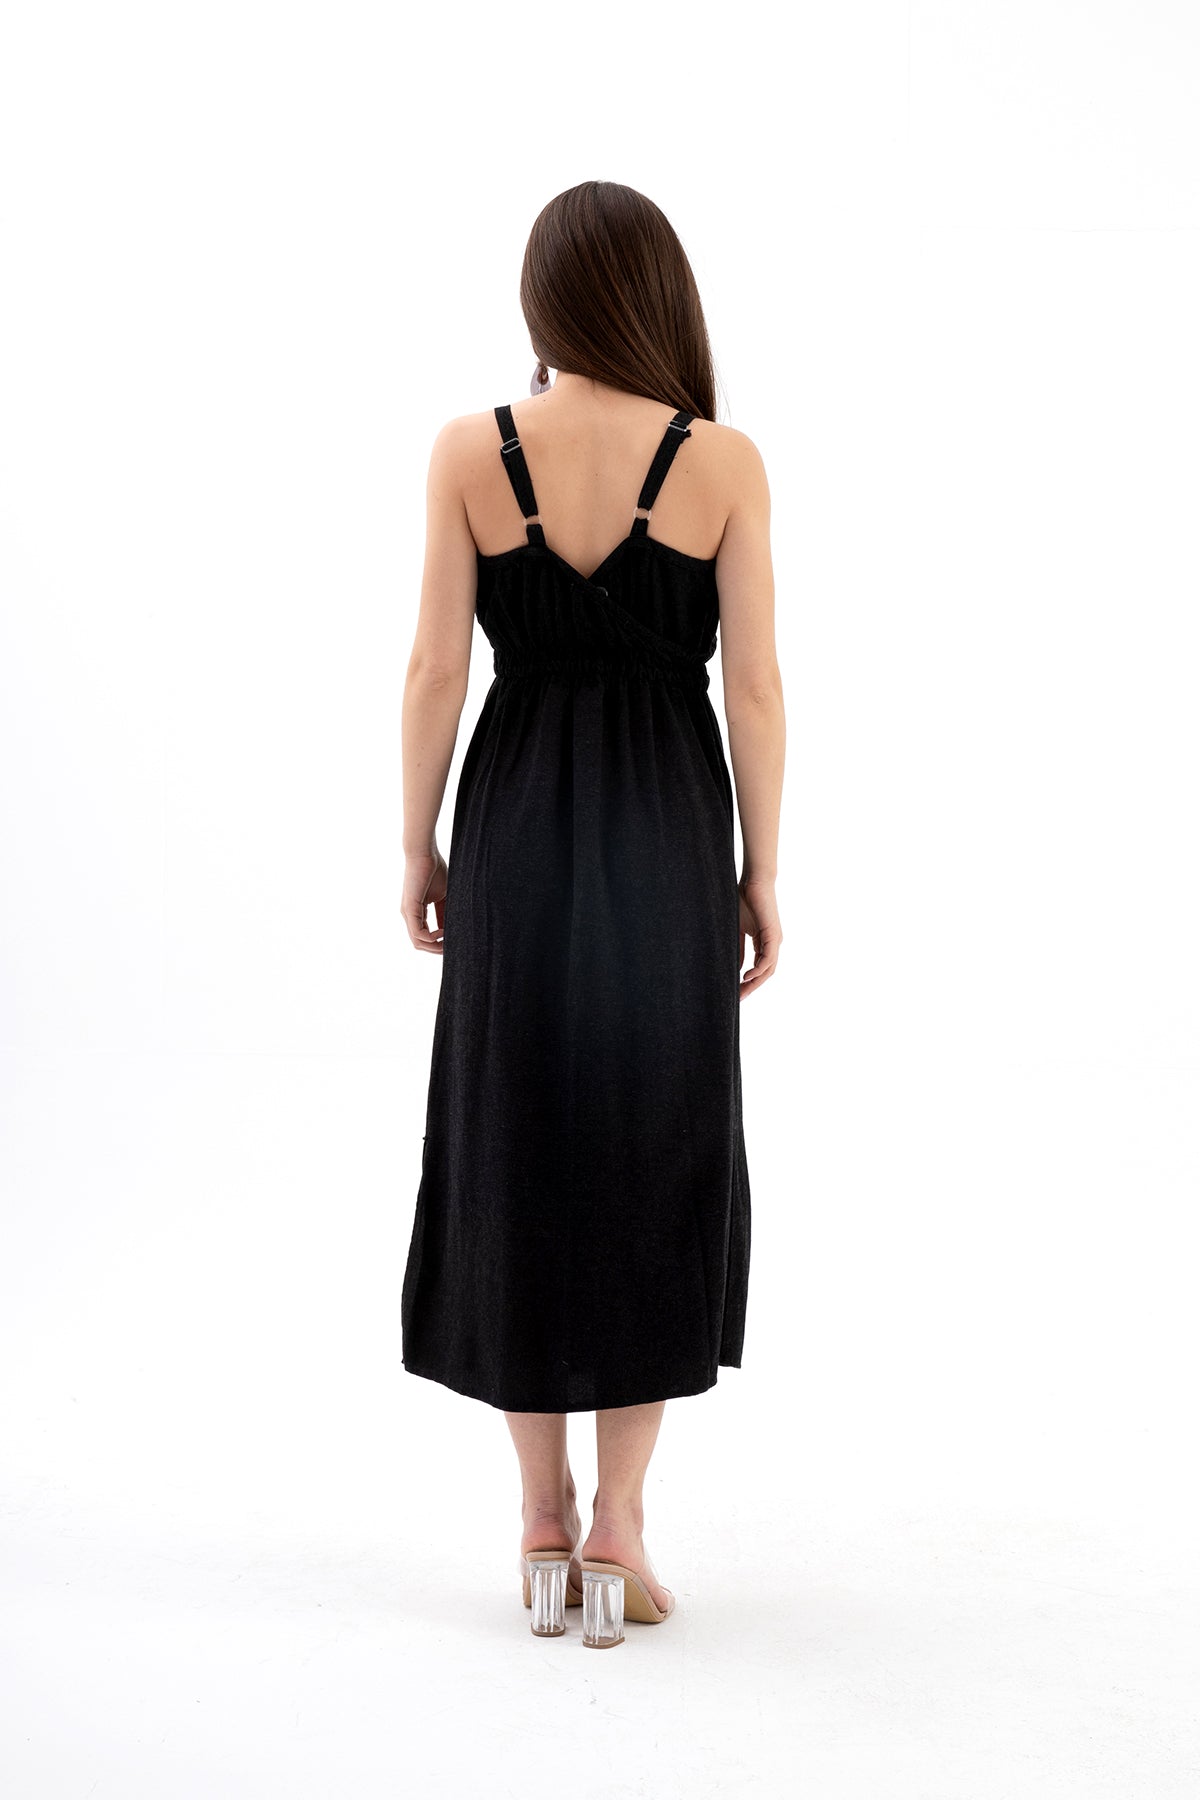 Askılı Önü Düğmeli Yırtmaçlı Keten Elbise - Siyah - Pazaribu